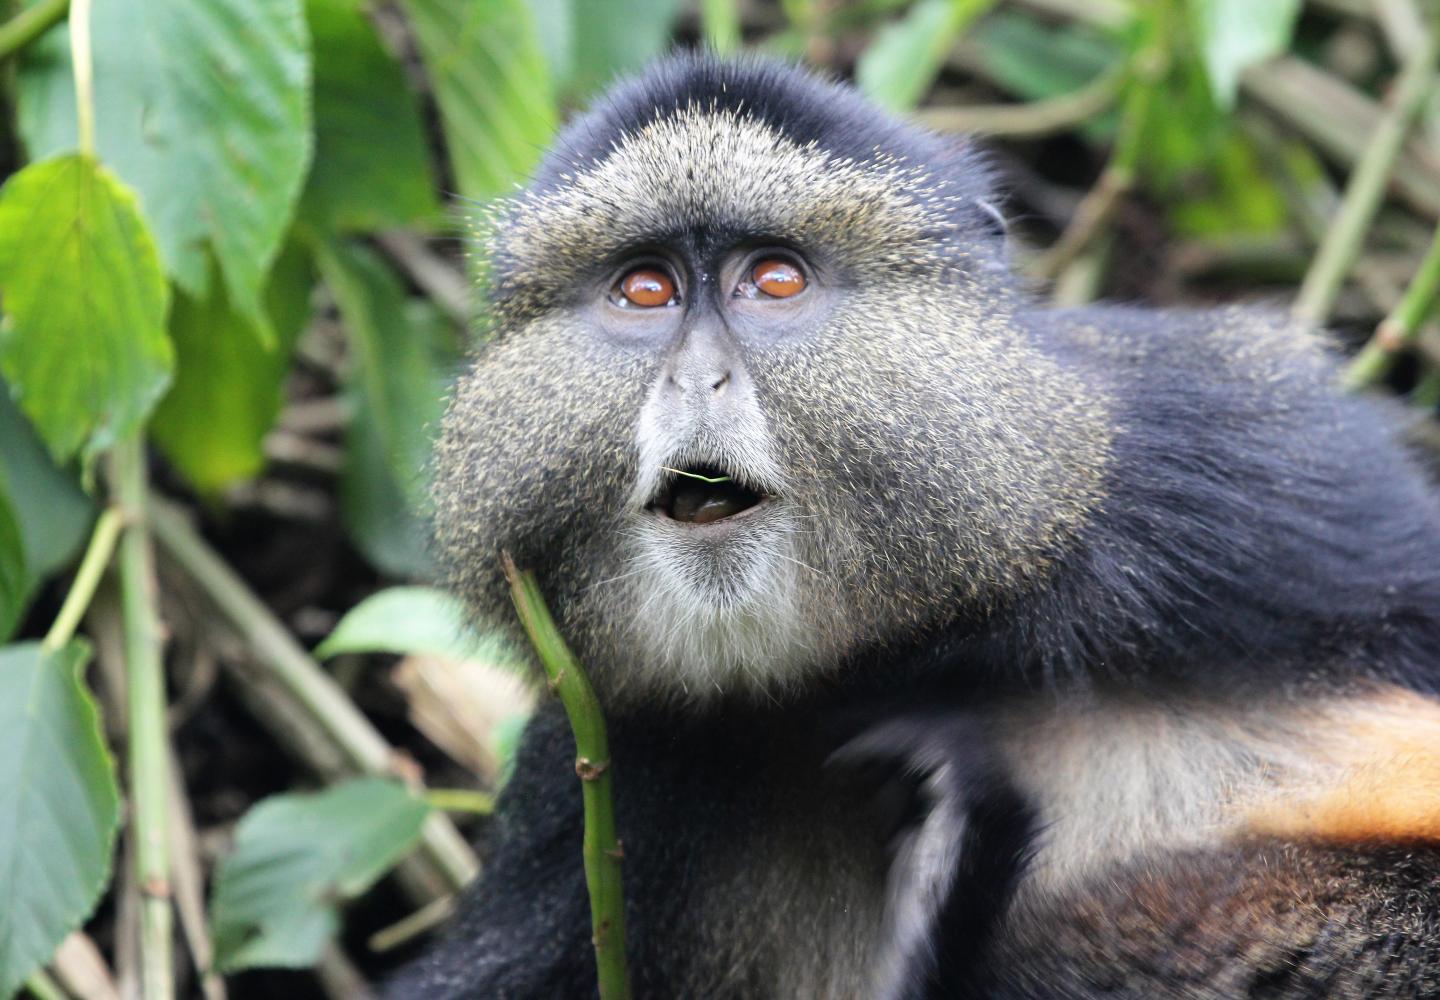 Golden Monkey (Volcanoes National Park Rwanda)